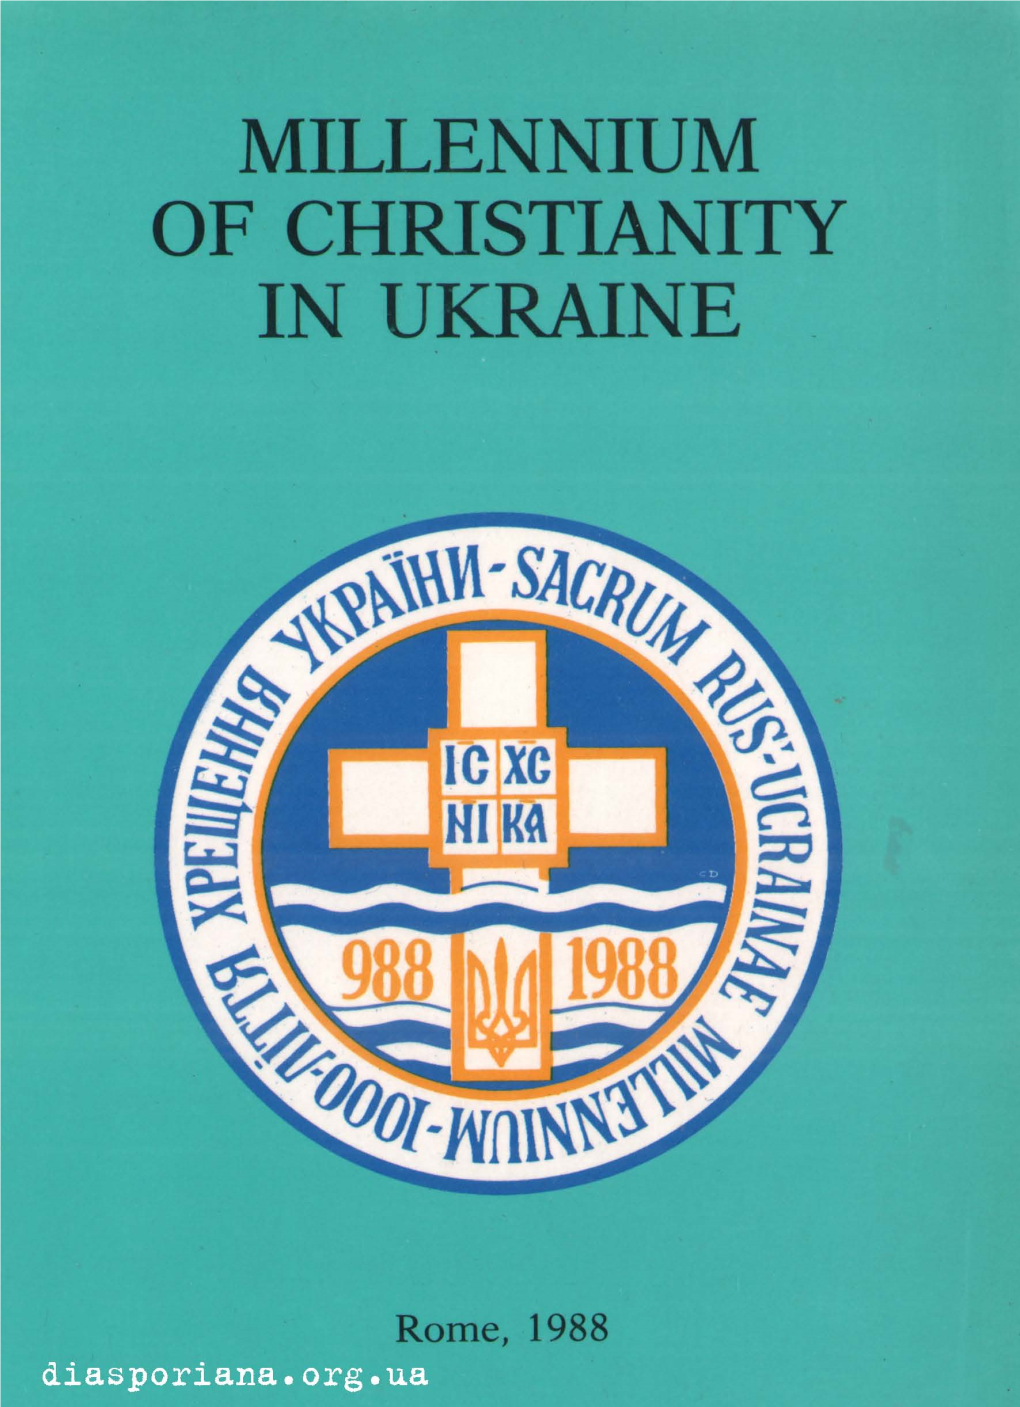 Millennium of Christianity in Ukraine